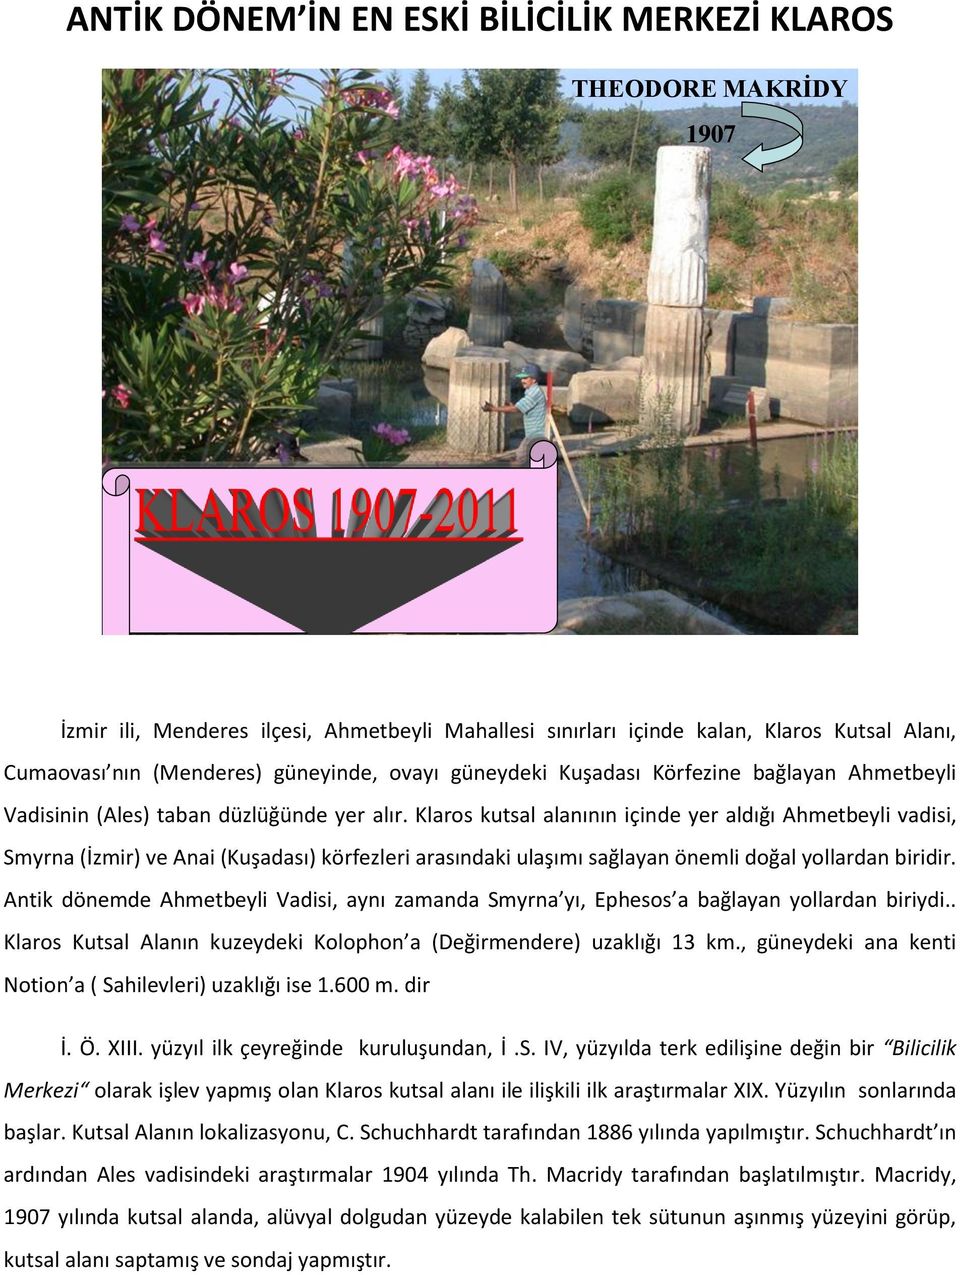 Klaros kutsal alanının içinde yer aldığı Ahmetbeyli vadisi, Smyrna (İzmir) ve Anai (Kuşadası) körfezleri arasındaki ulaşımı sağlayan önemli doğal yollardan biridir.